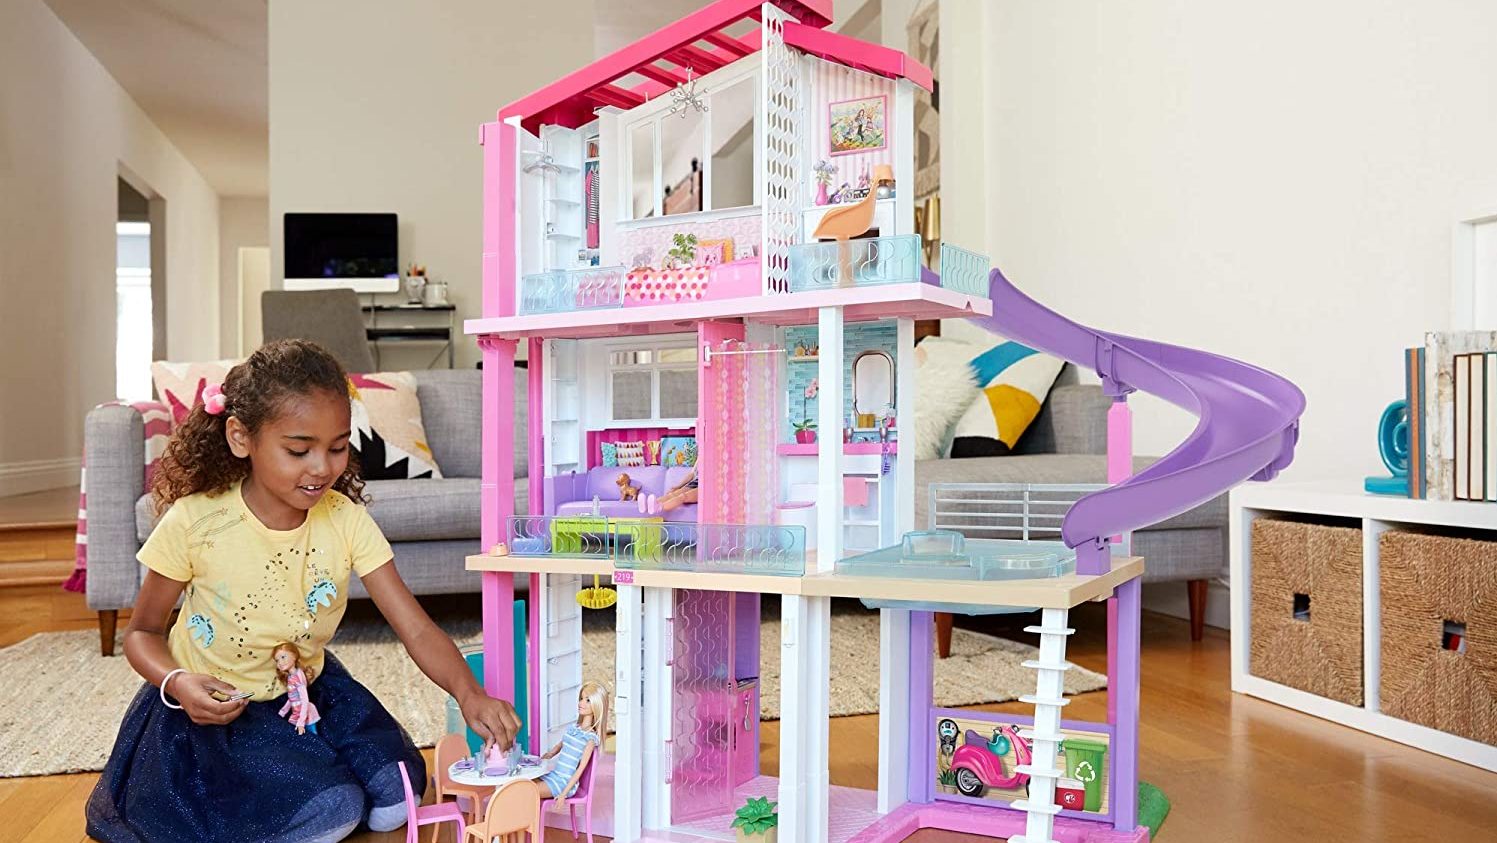 barbie dream house play set